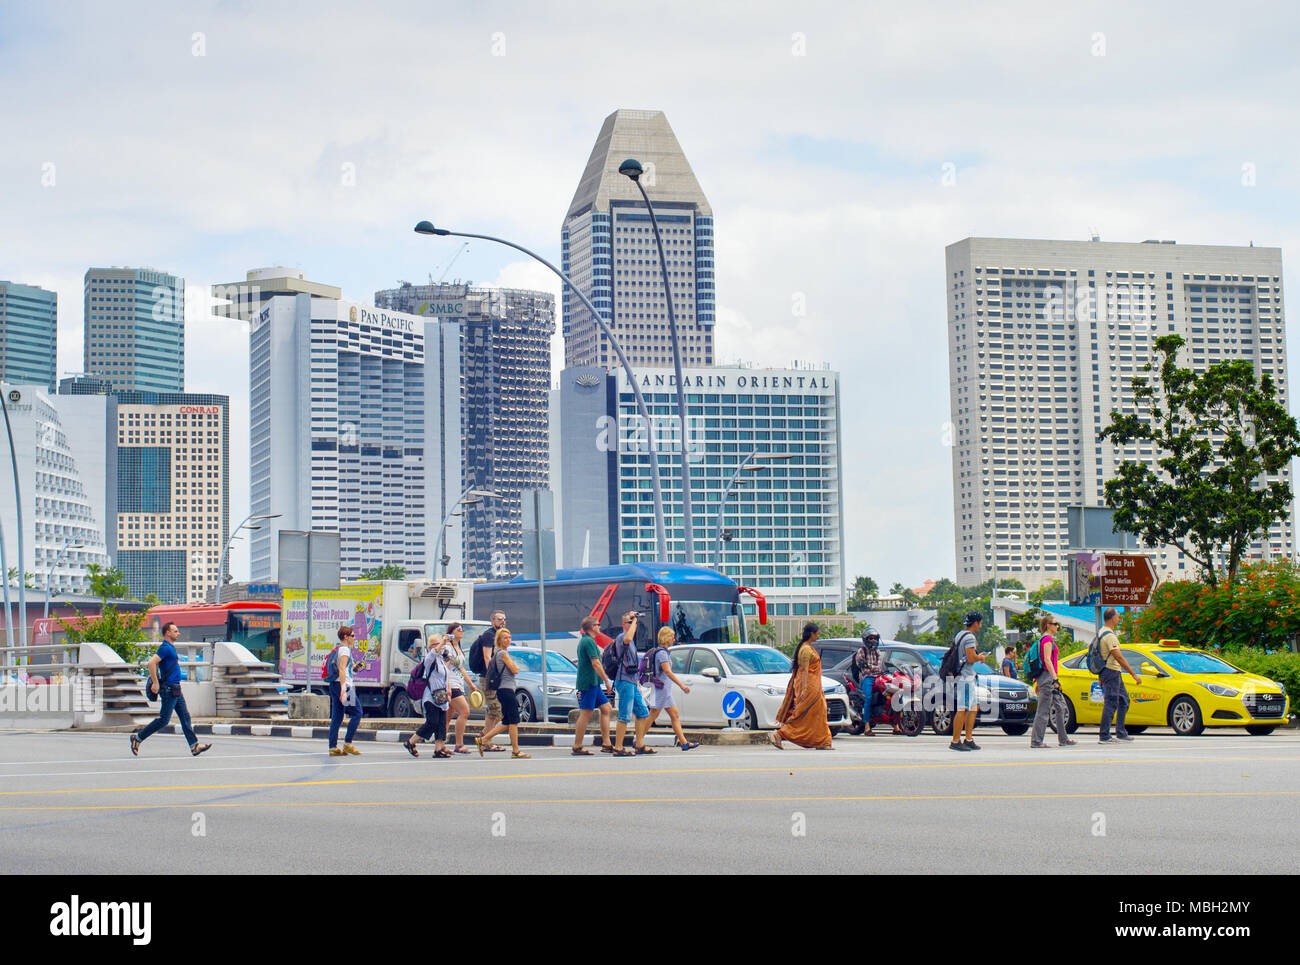 Singapour - Jan 14, 2017 : Les personnes qui traversent la route à Singapour. Singapour est un commerce mondial, la finance et le transport hub Banque D'Images